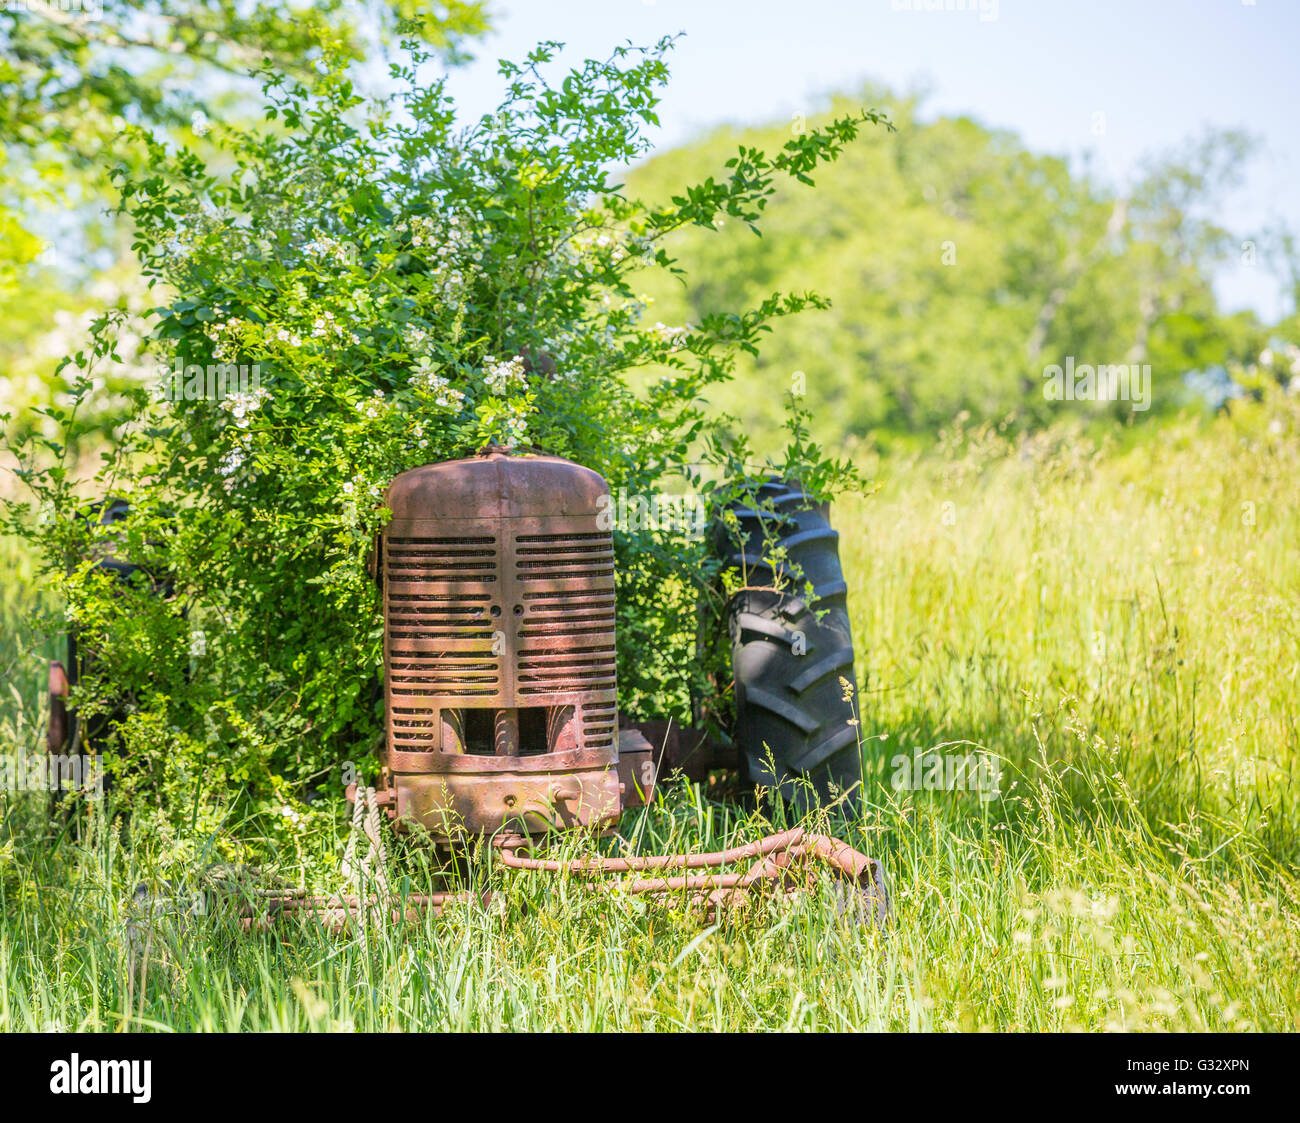 Tracteur agricole rouillé vieux assis dans un champ envahi dans l'été Banque D'Images